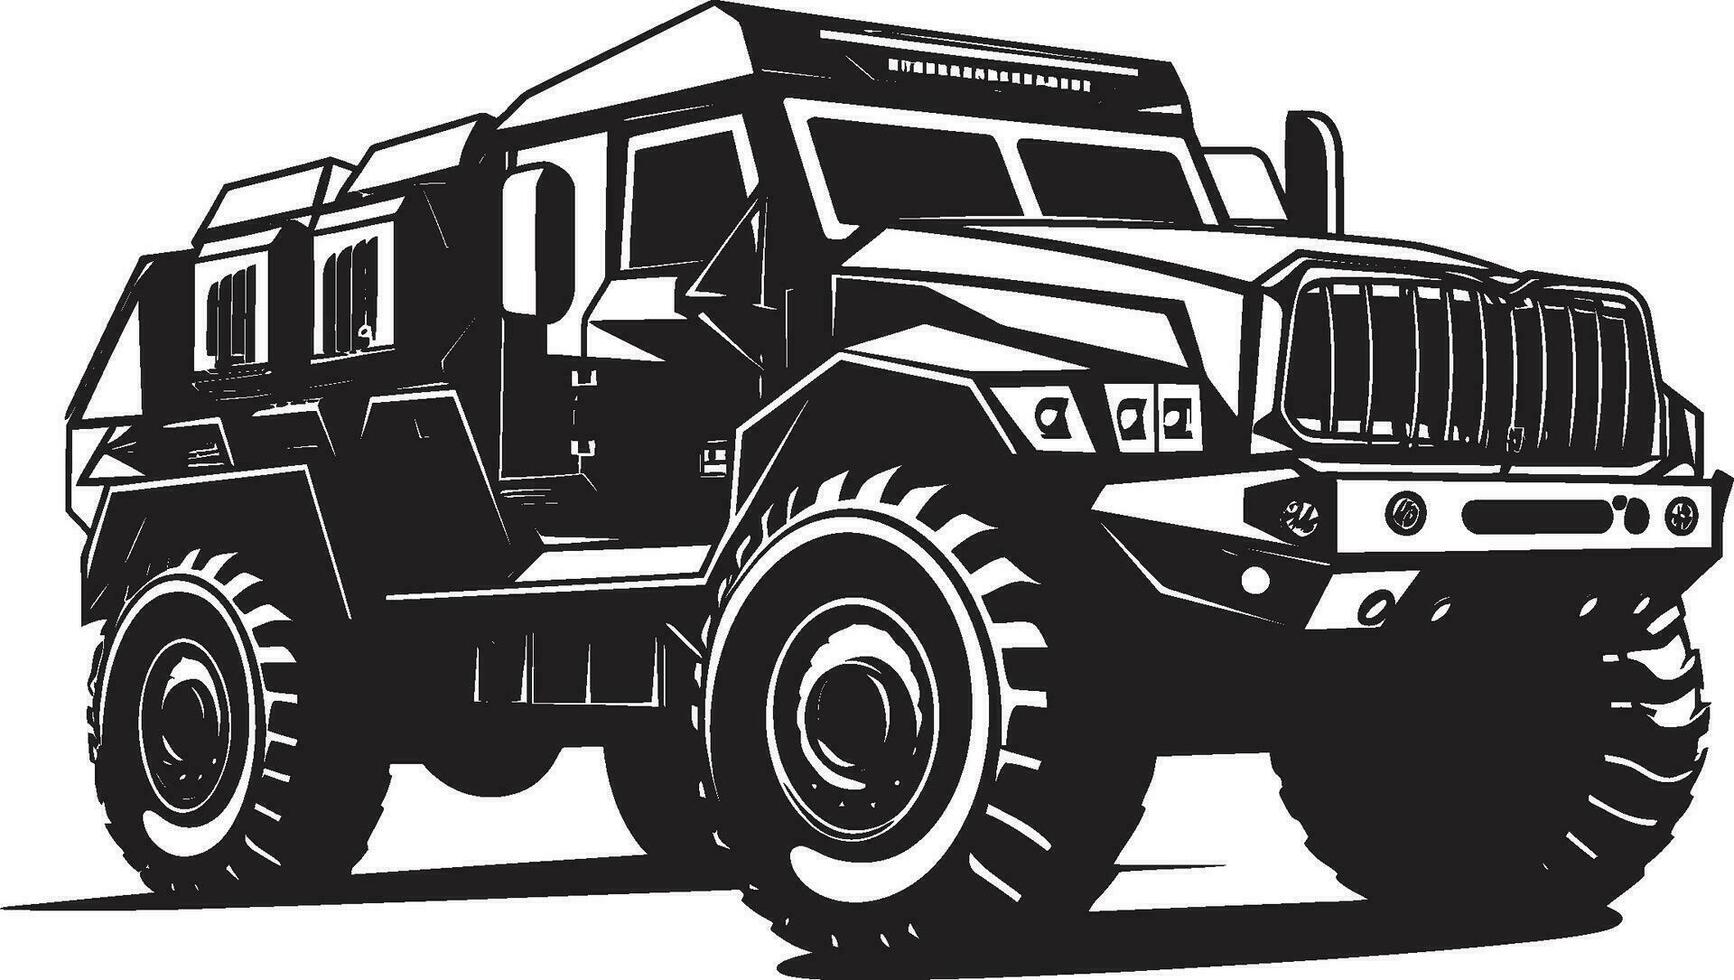 Guerreiro s passeio Preto exército 4x4 logotipo combate cruzador vetor militares símbolo